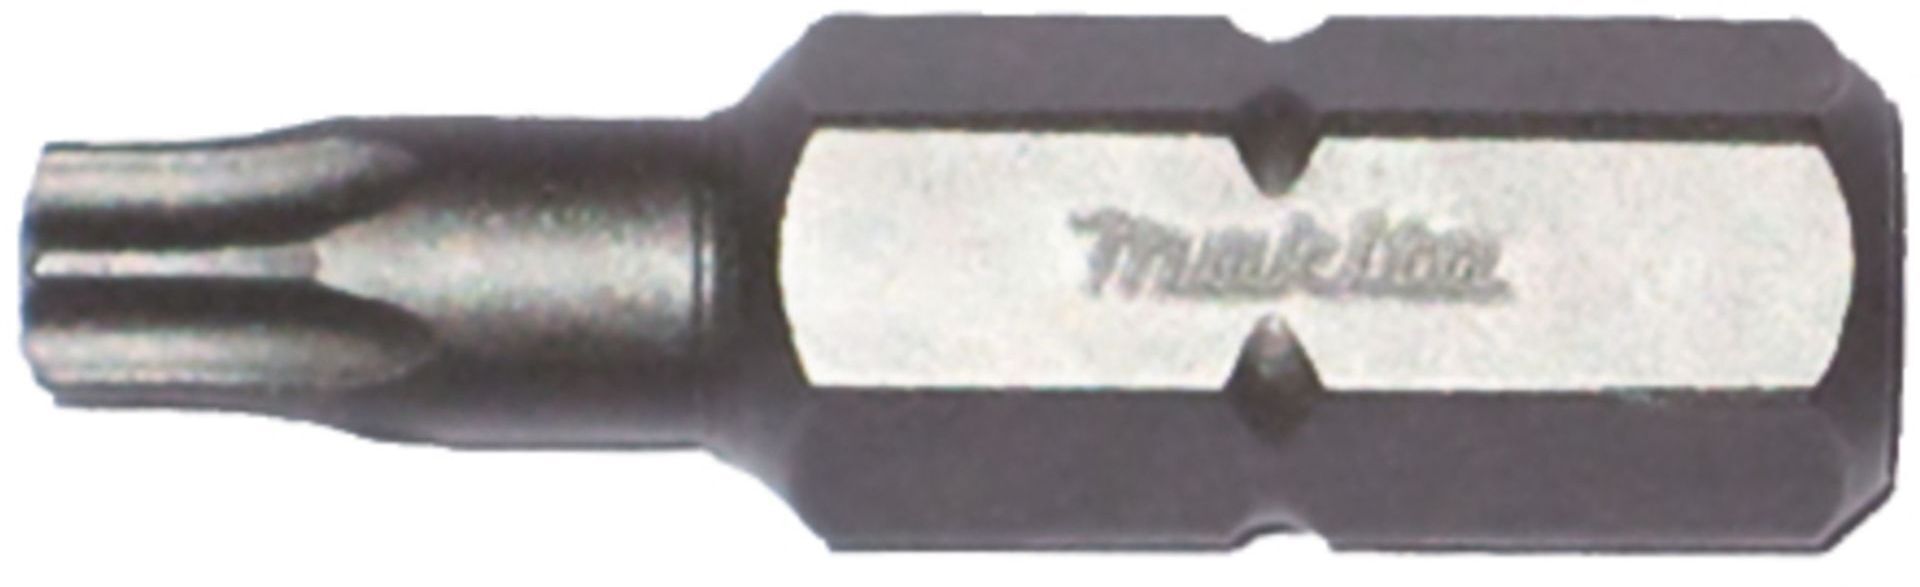 Makita P-06389 Tandard vi con eil c63 torx t40 x 25 mm